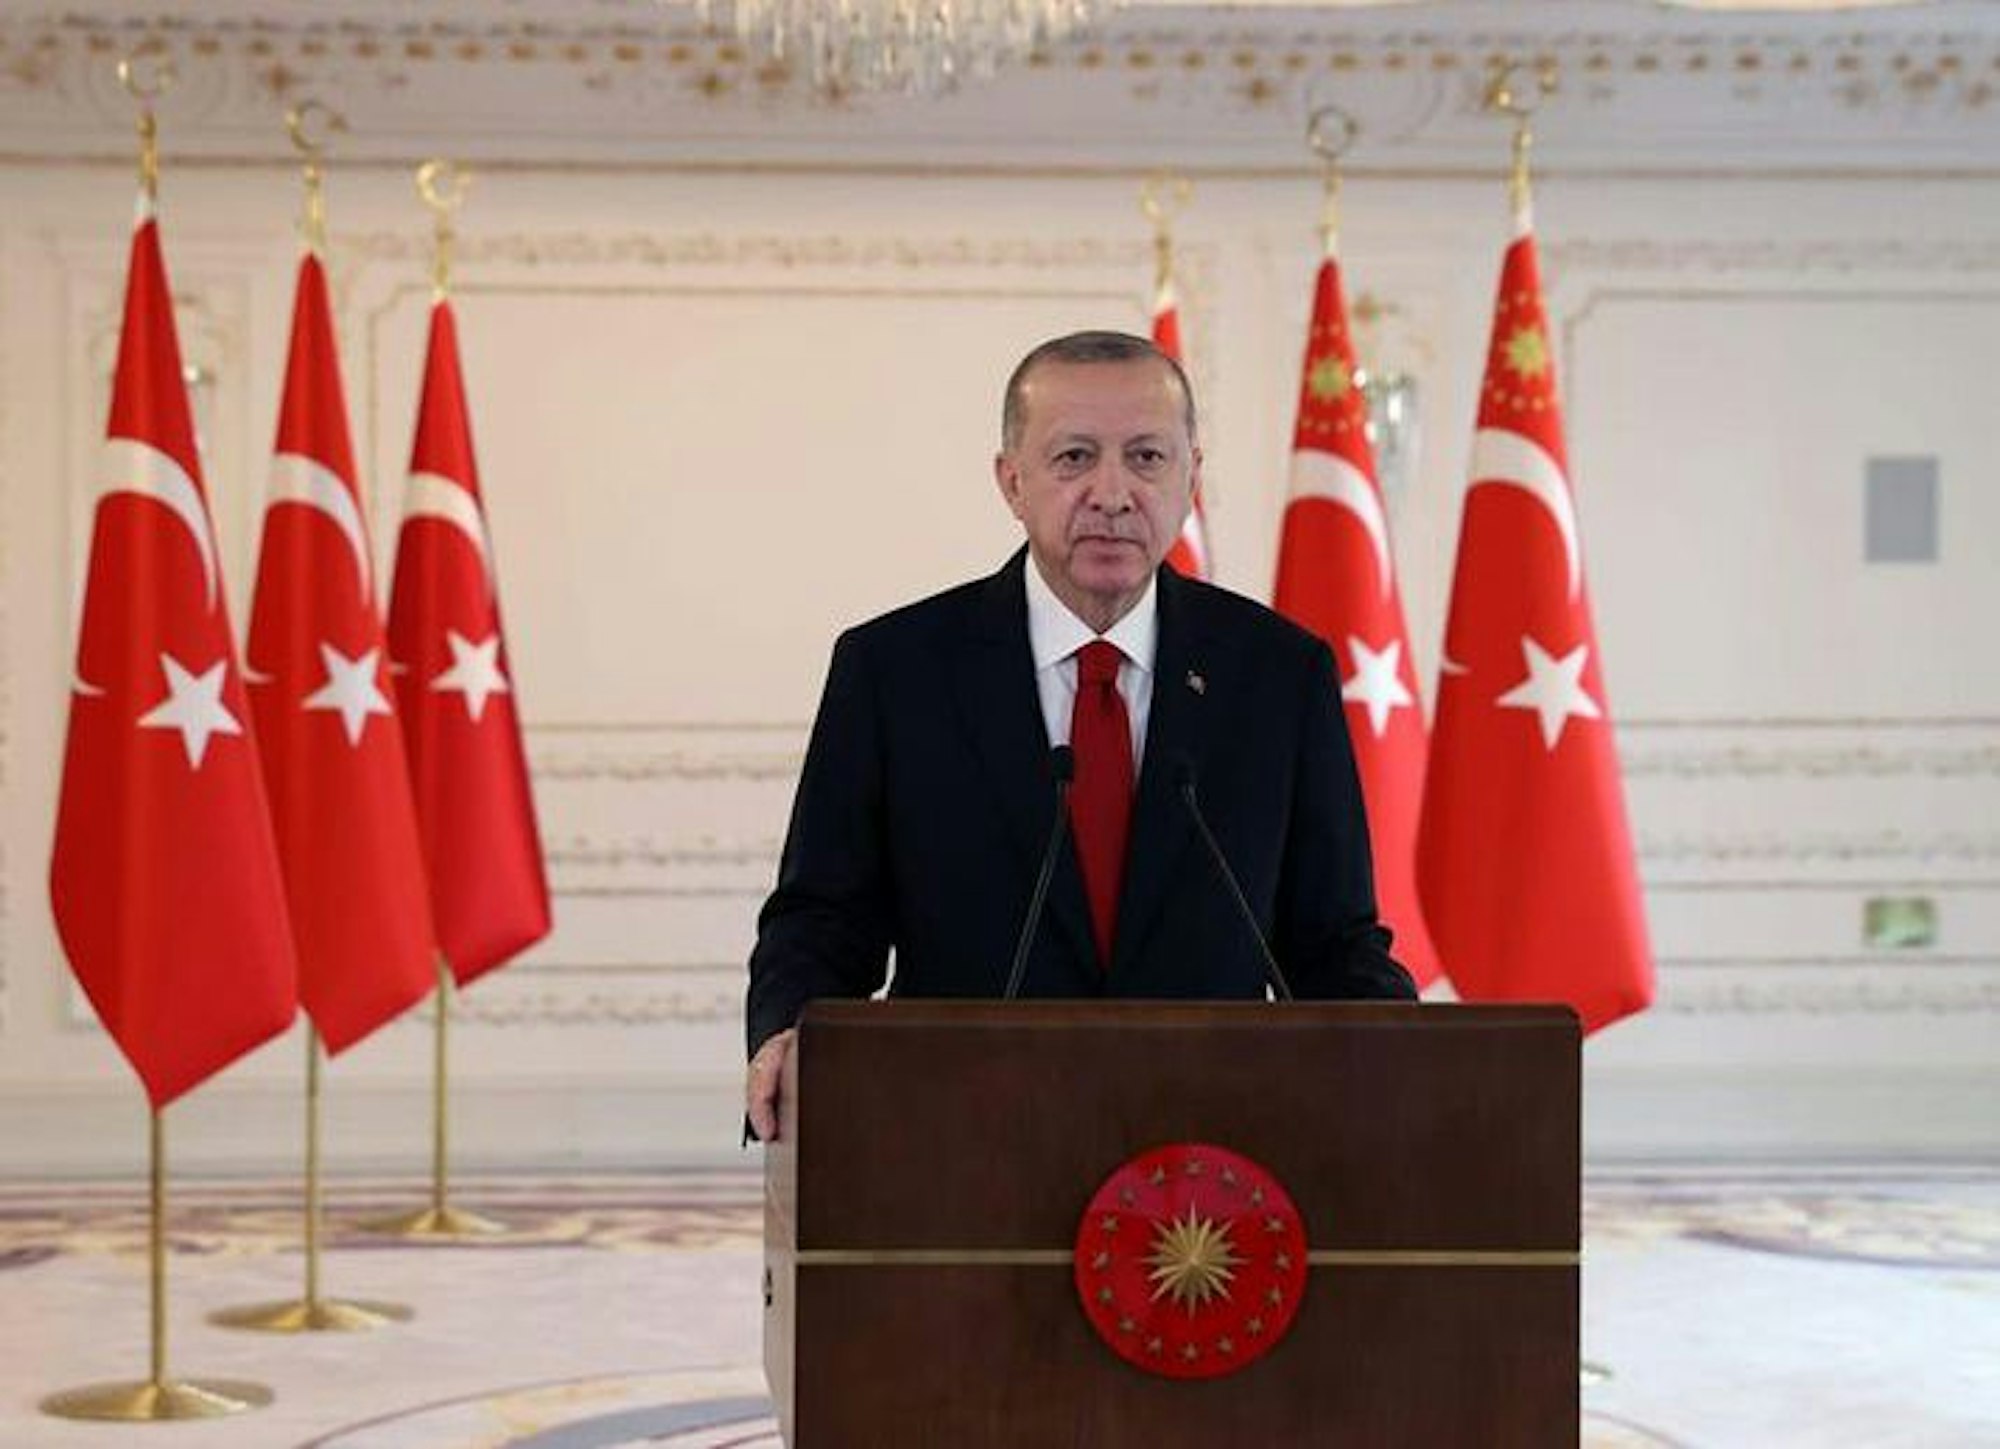 Recep Tayyip Erdogan, Präsident der Türkei, spricht während einer Pressekonferenz.